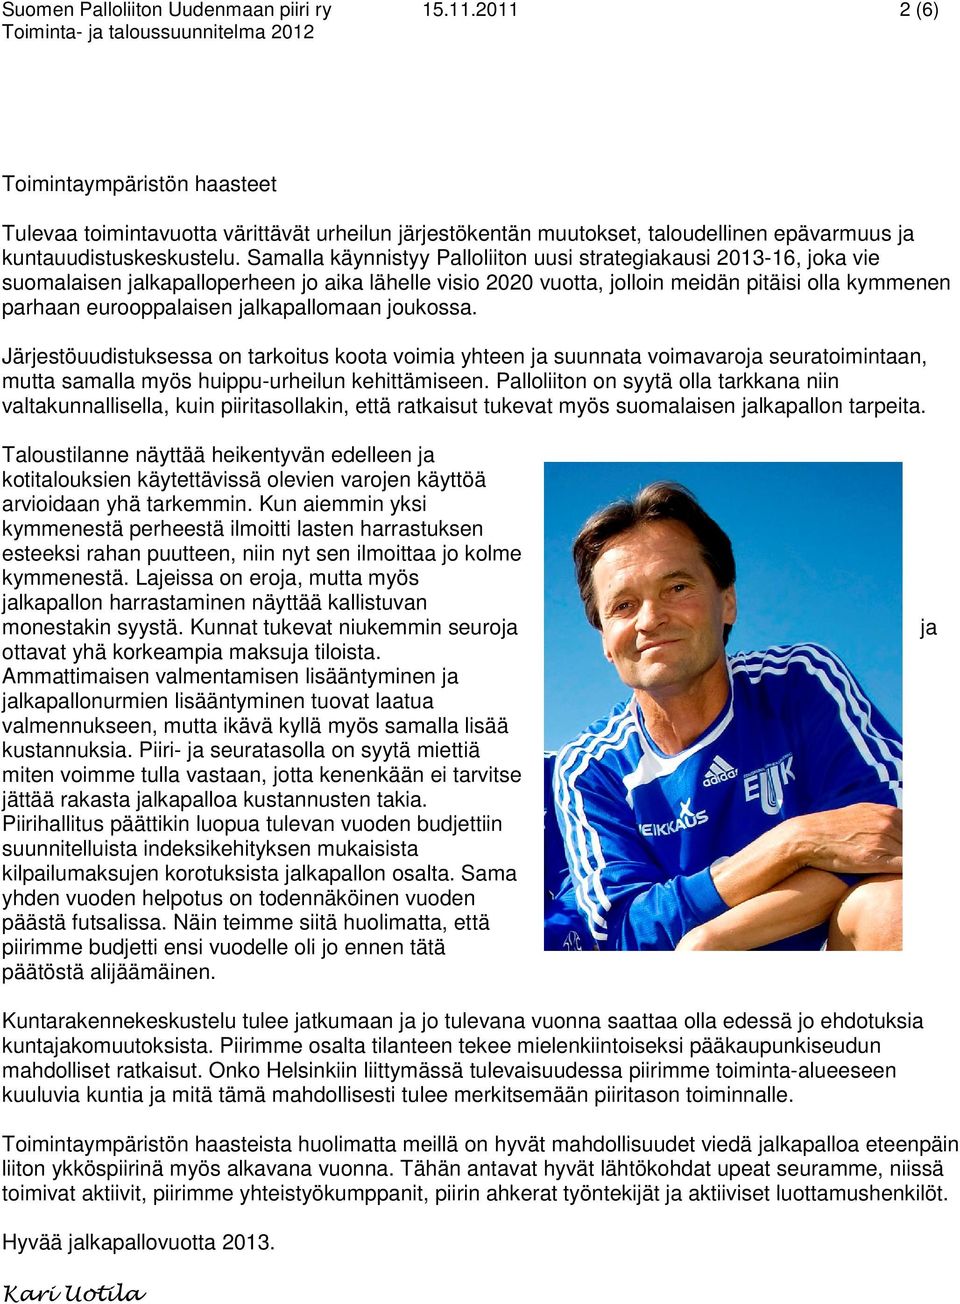 Samalla käynnistyy Palloliiton uusi strategiakausi 2013-16, joka vie suomalaisen jalkapalloperheen jo aika lähelle visio 2020 vuotta, jolloin meidän pitäisi olla kymmenen parhaan eurooppalaisen